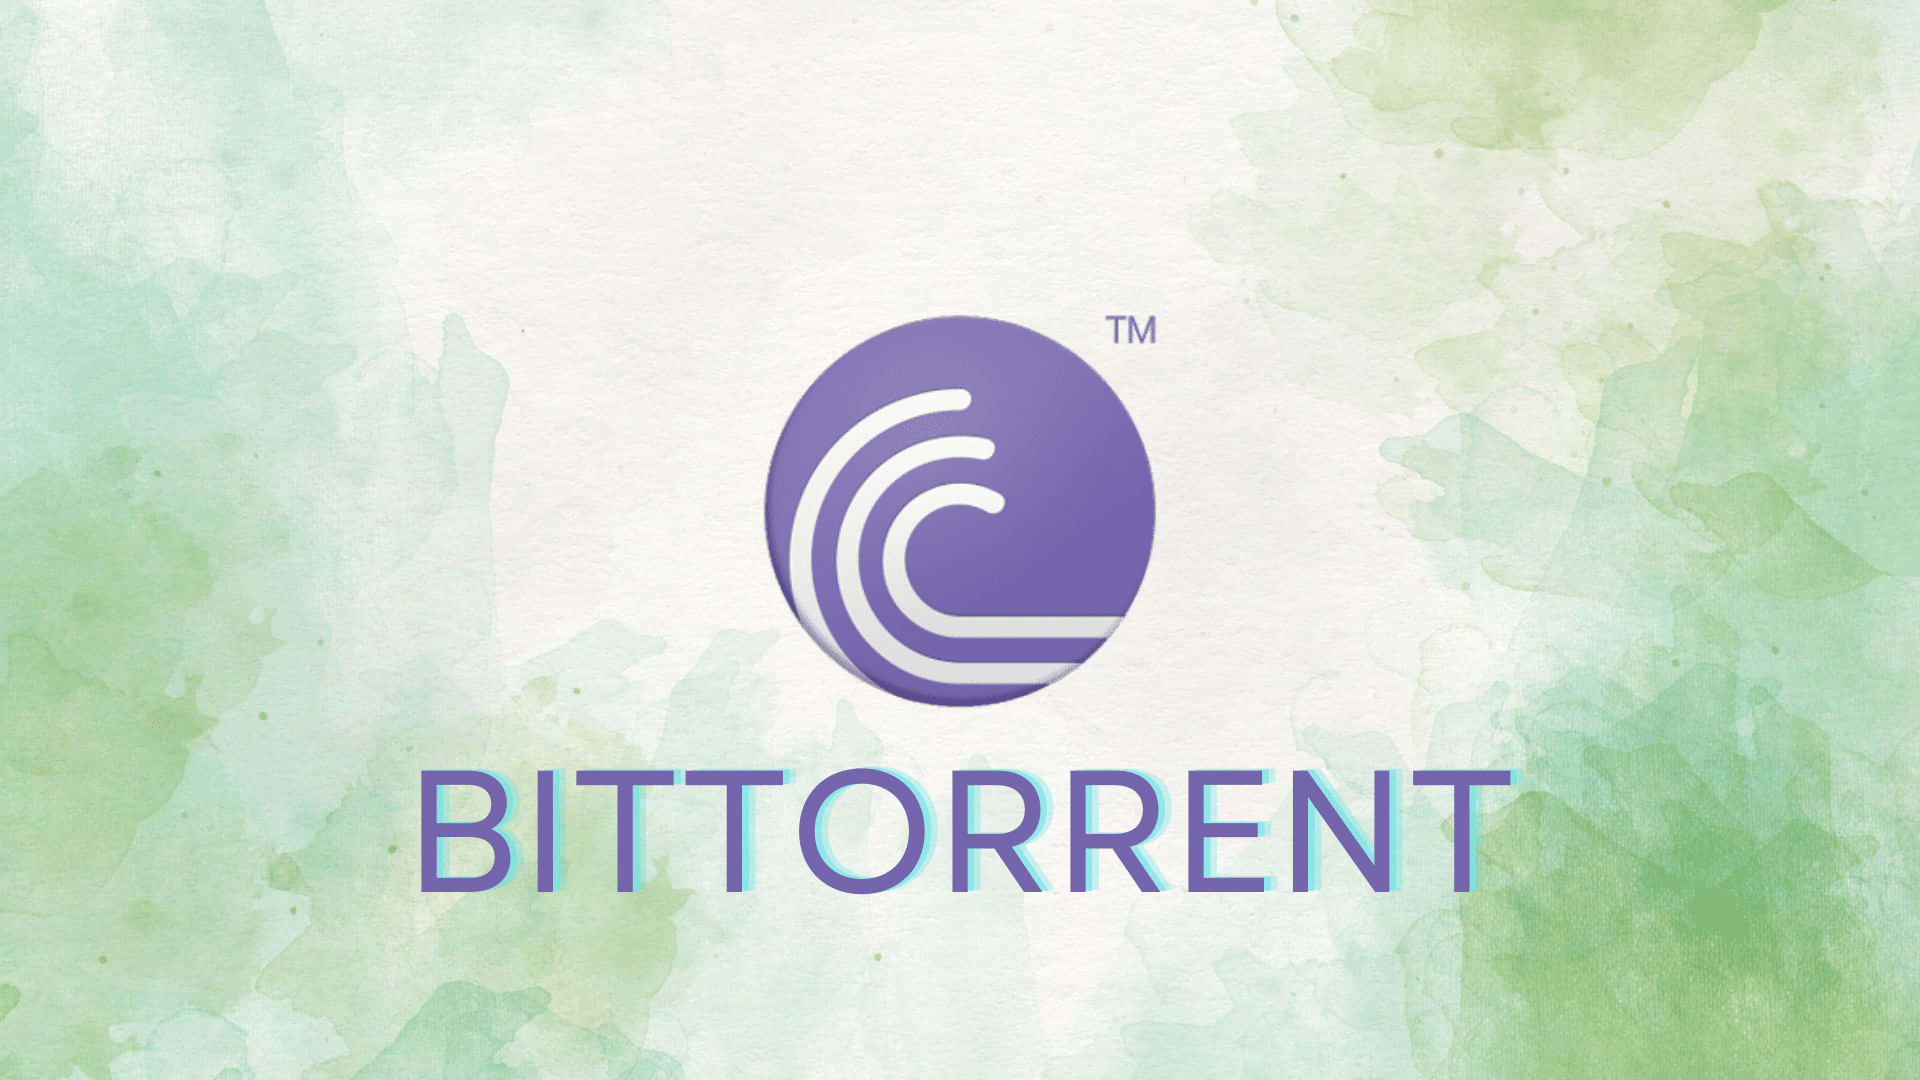 BitTorrent Price